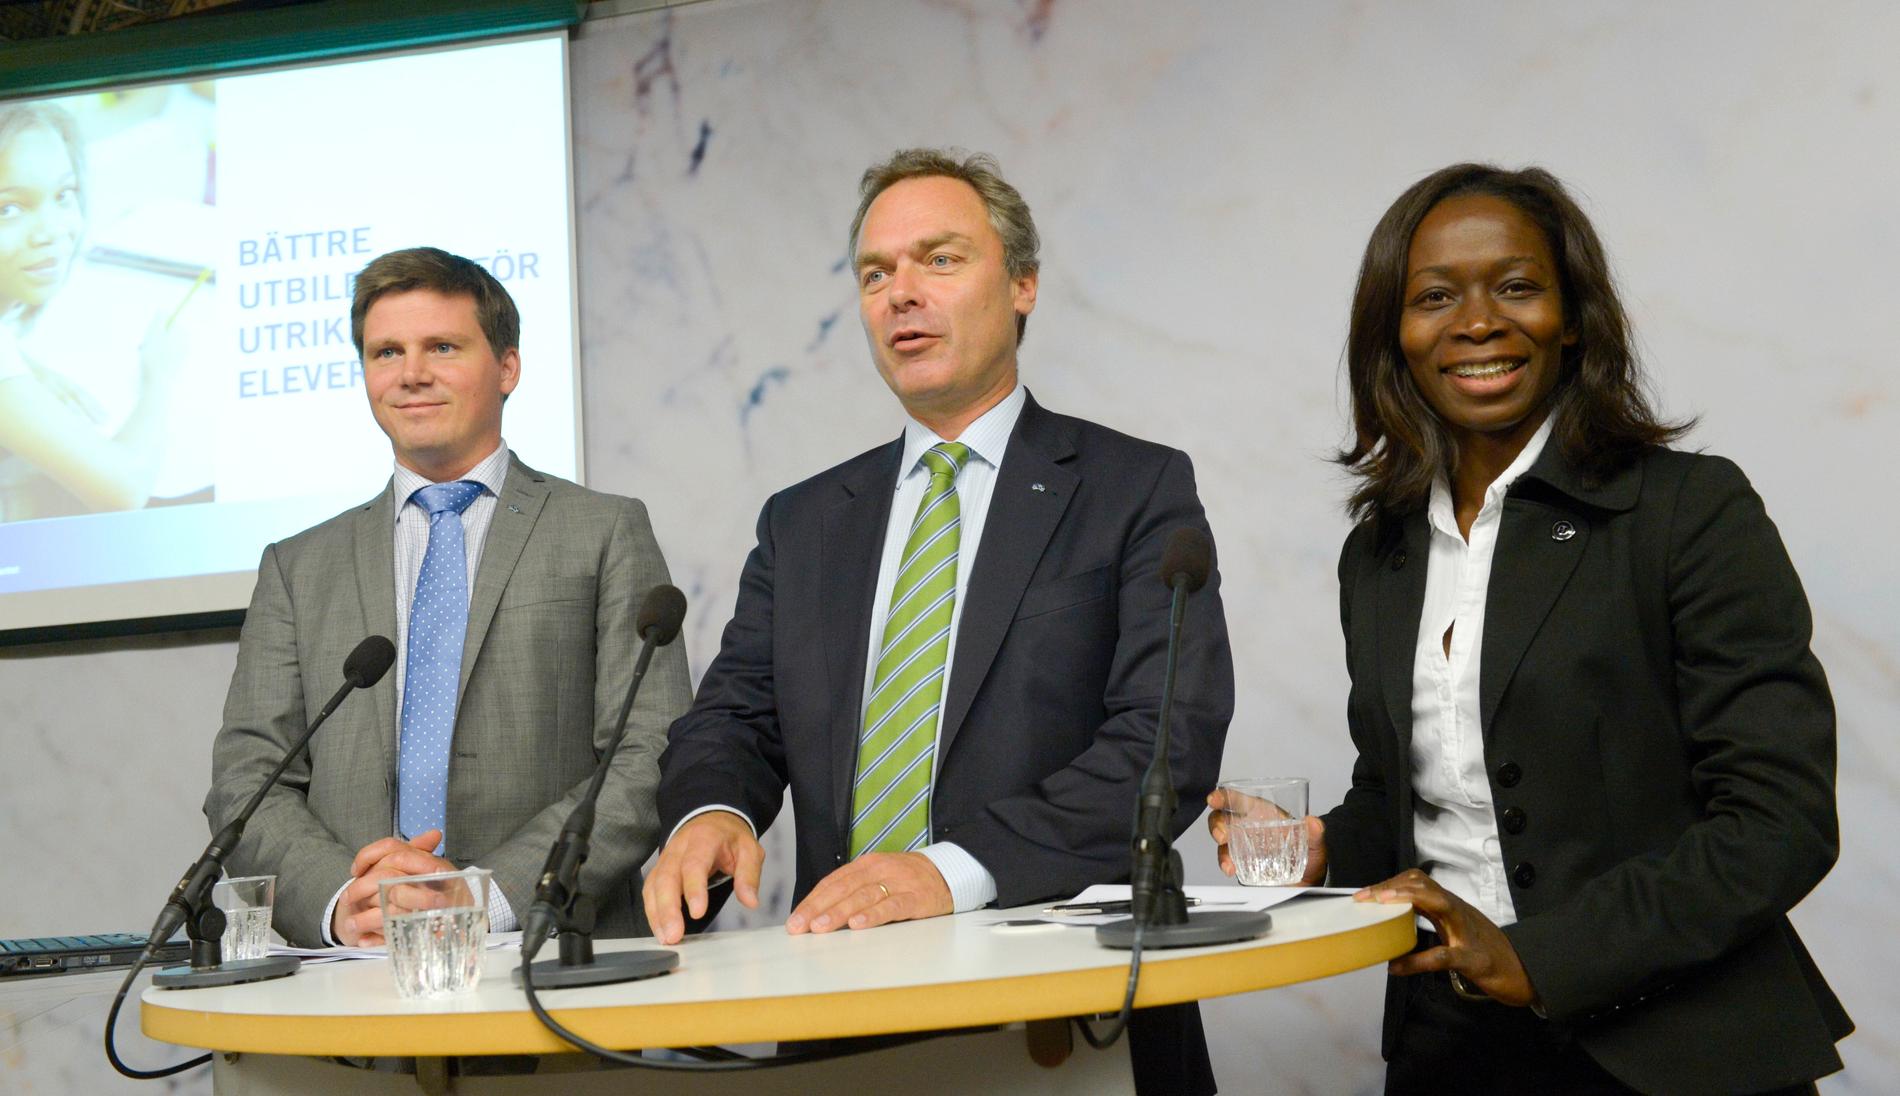 Erik Ullenhag, Jan Björklund och Nyamko Sabuni. Bilden är från september 2012, då alla tre var statsråd och Liberalerna fortfarande hette Folkpartiet.